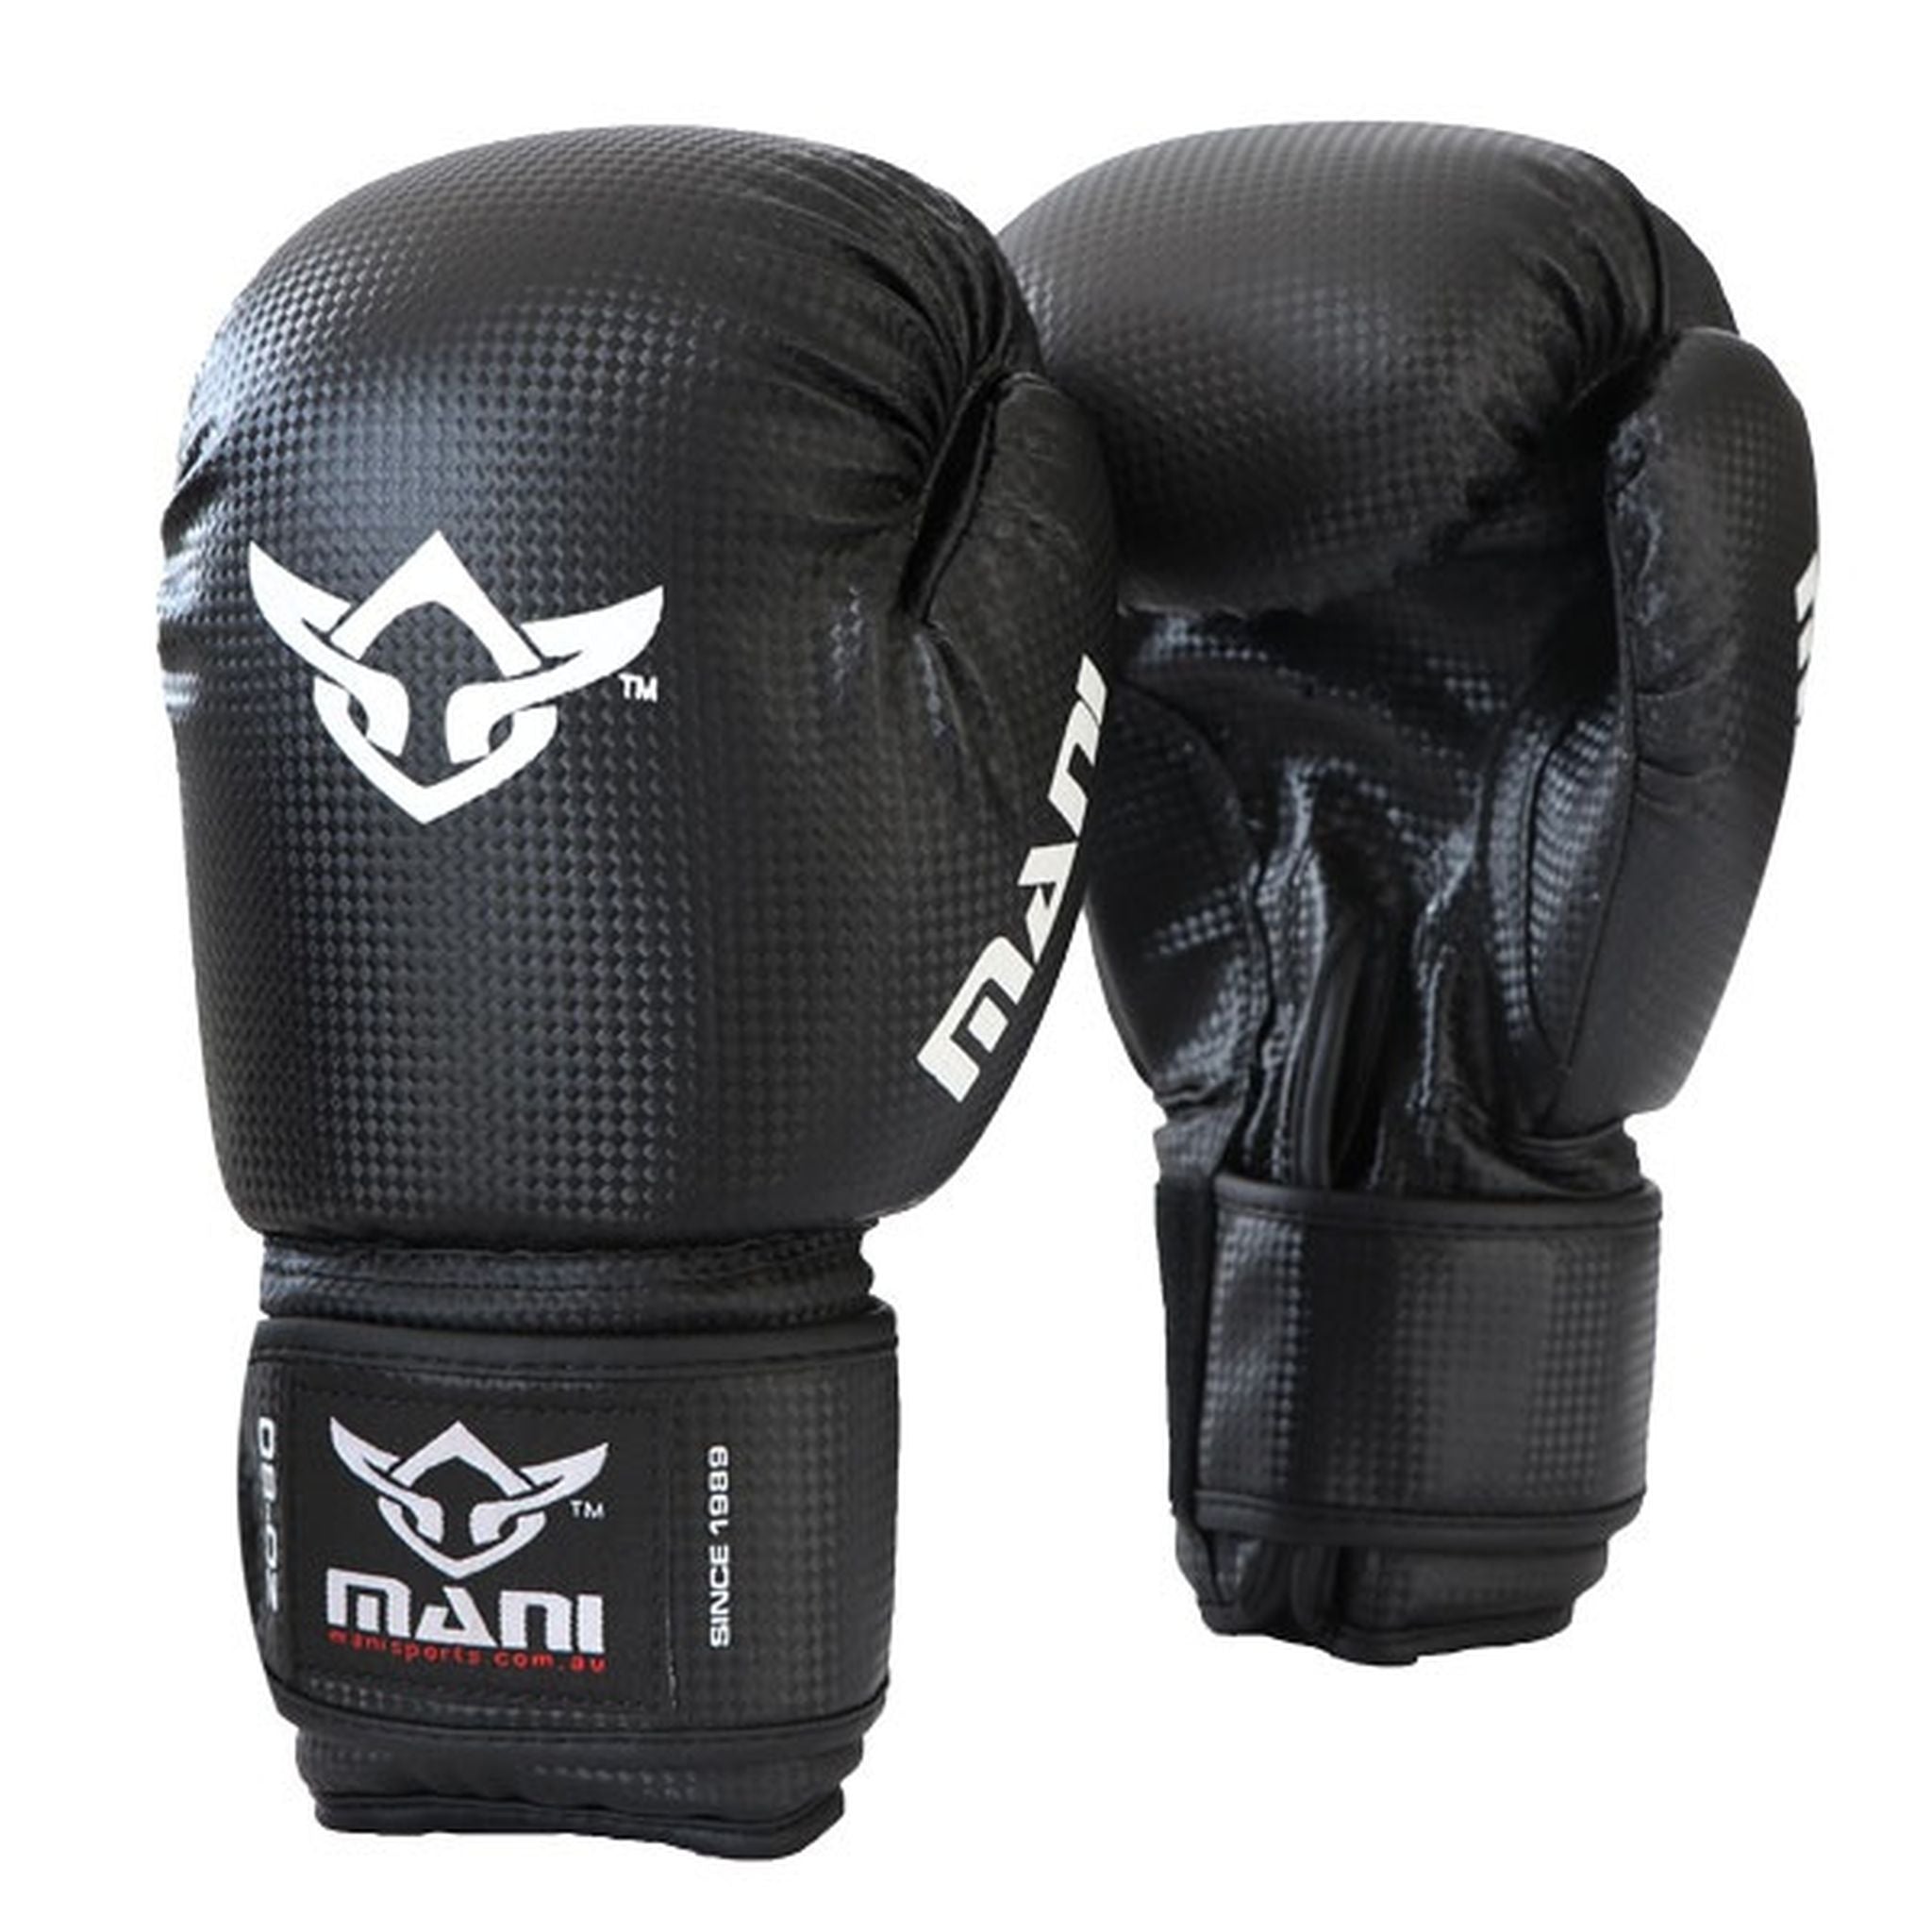 MANI Teenage 8oz Boxing Glove